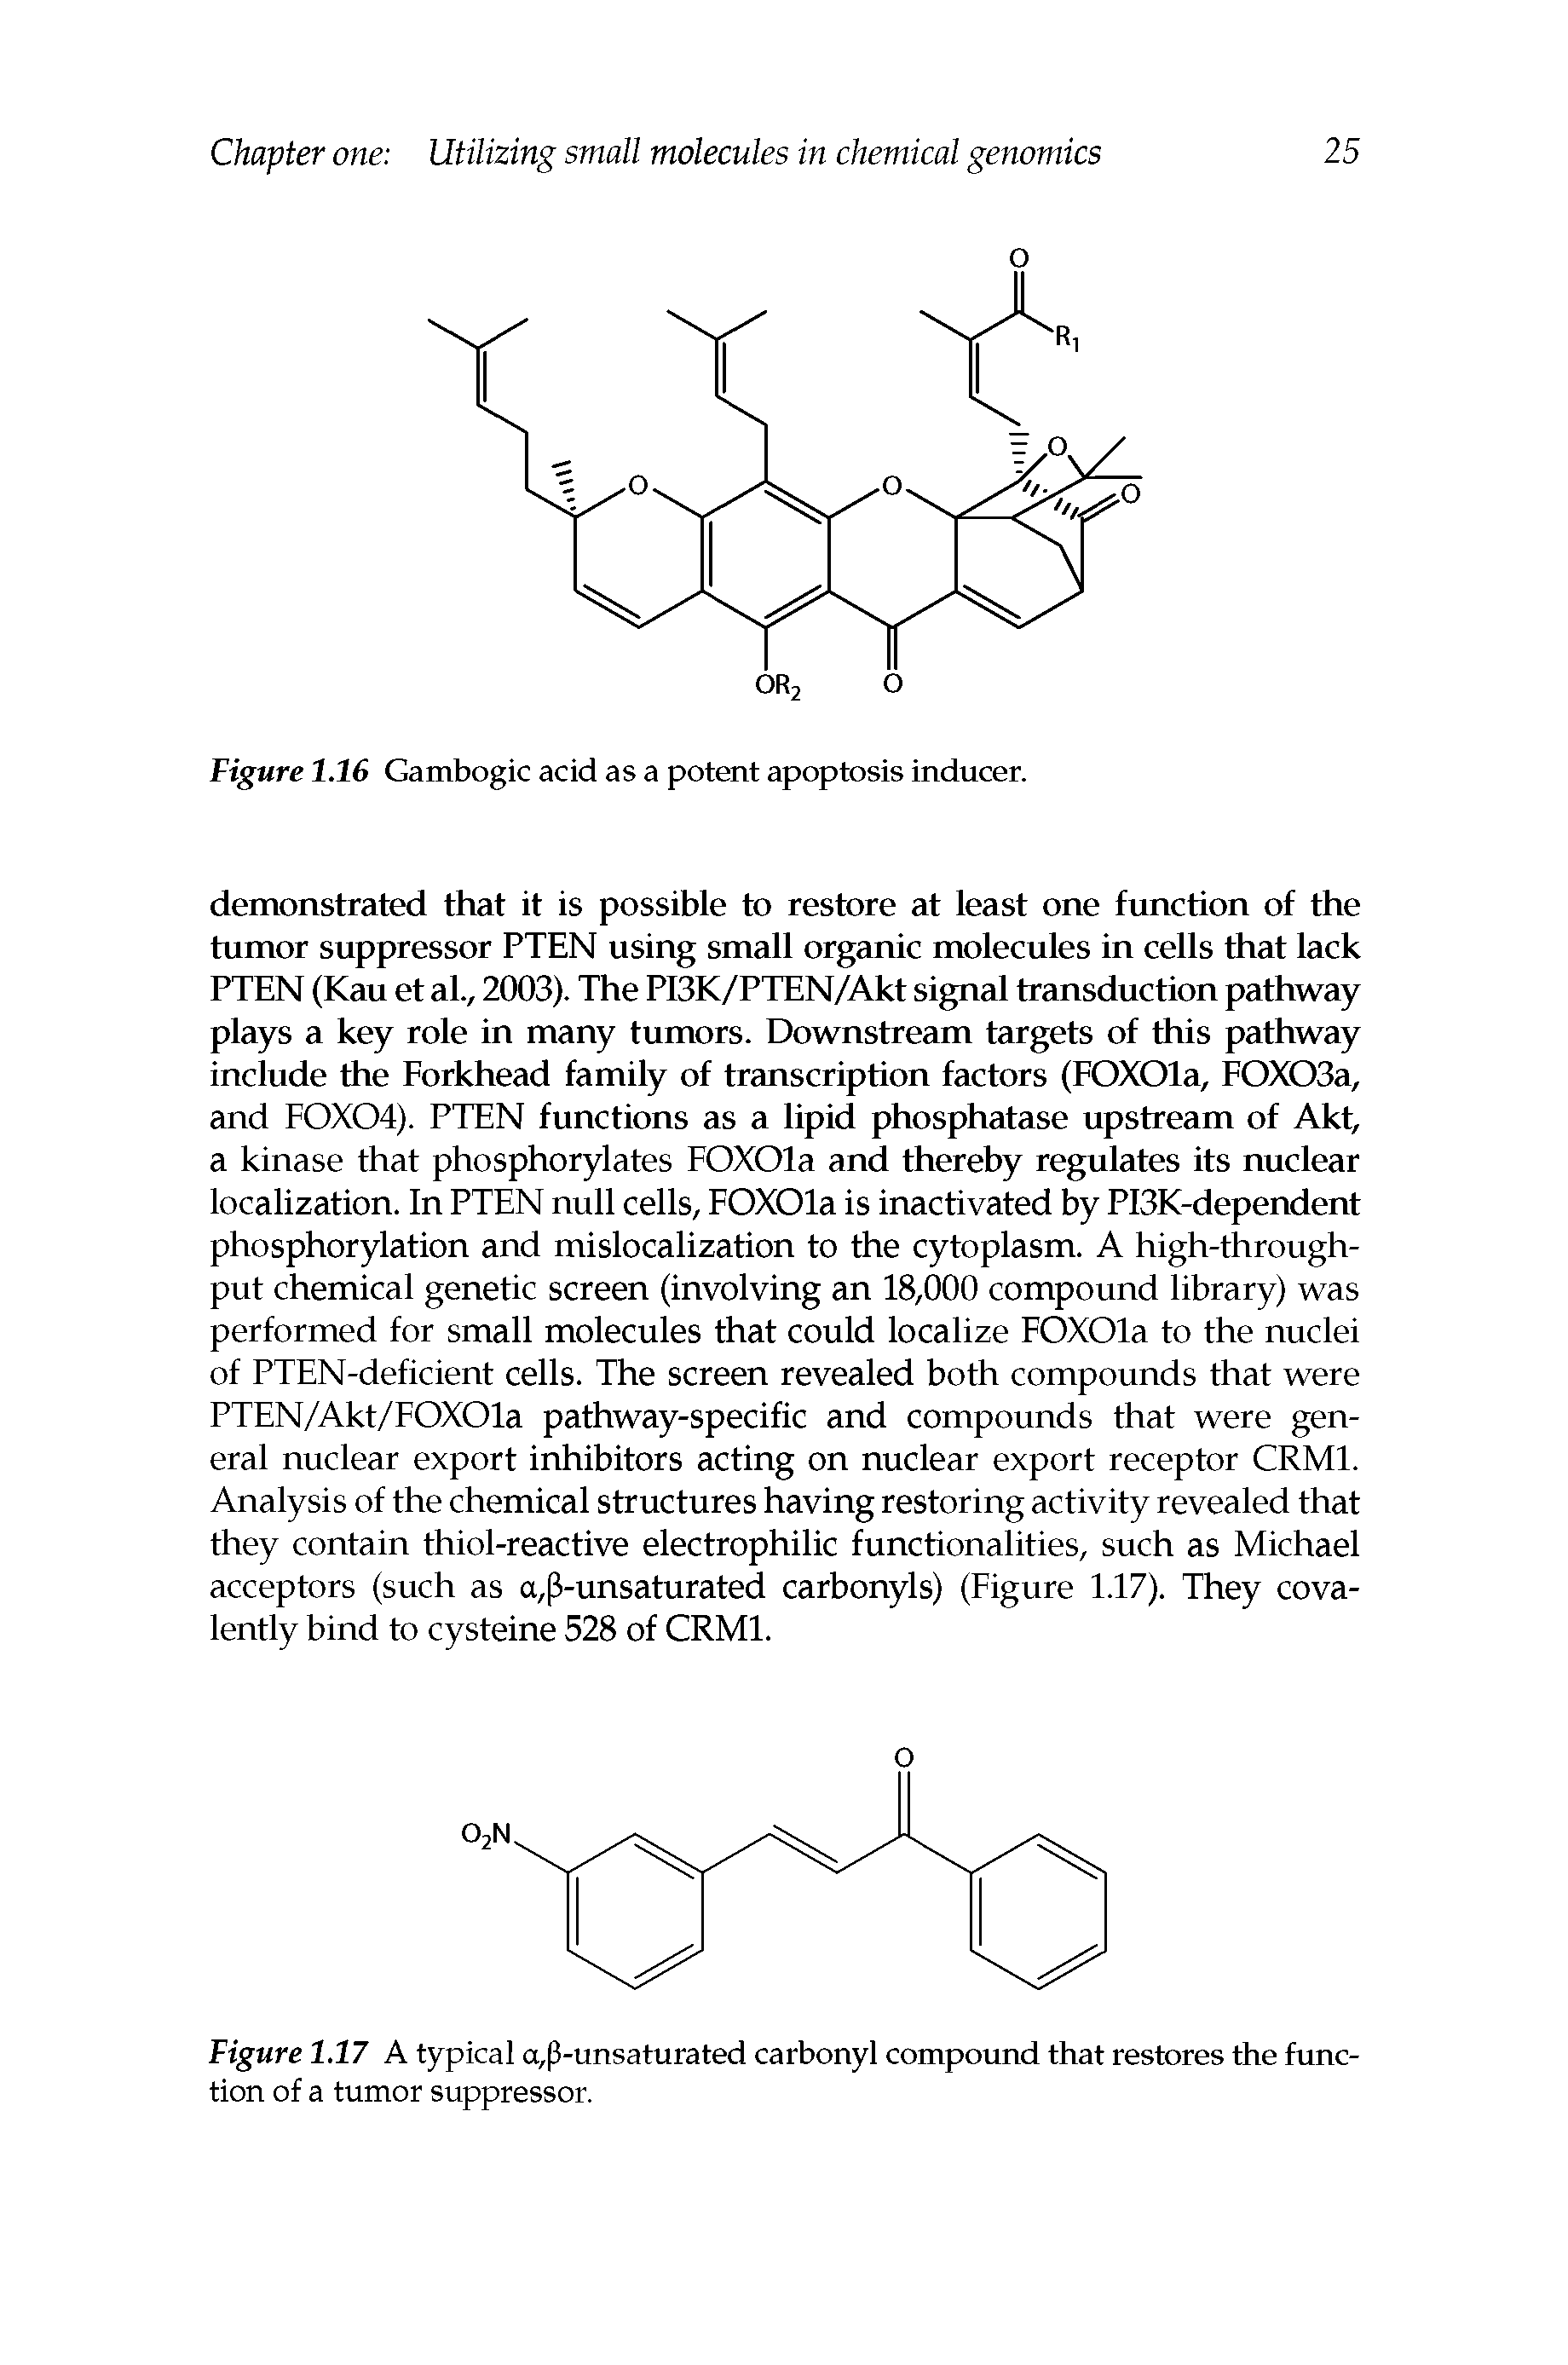 Figure 1.16 Gambogic acid as a potent apoptosis inducer.